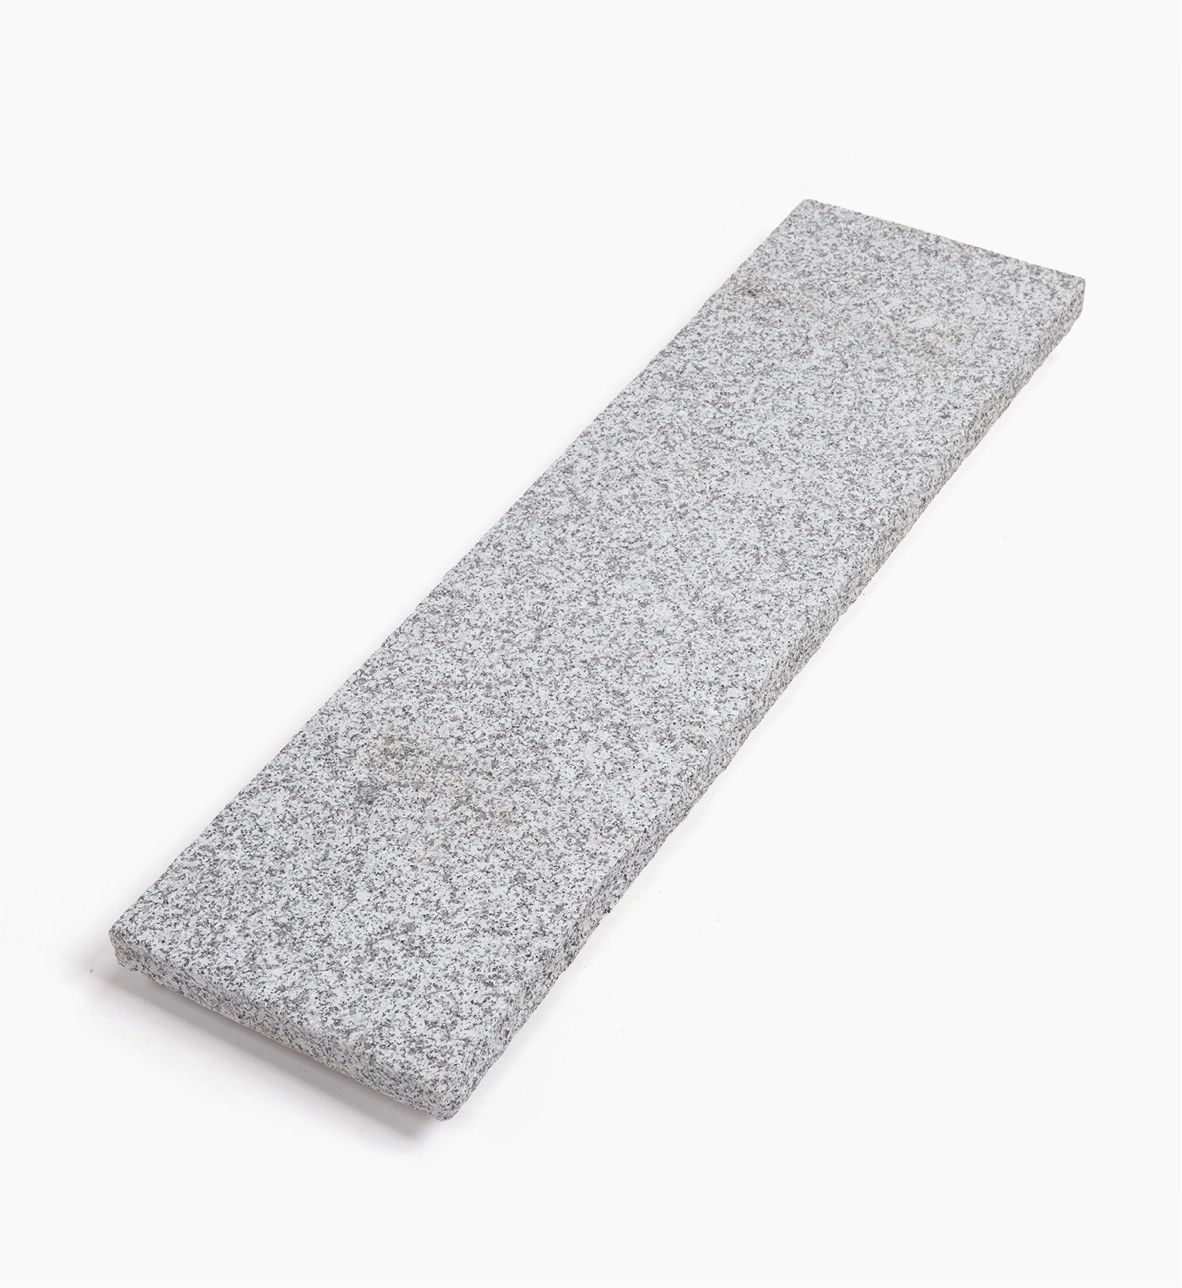 Mauerbabdeckplatte Kristall grau 100 x 28 x 4 cm OF und Köpfe geflammt. Längskanten handbekantet mit Wassernase